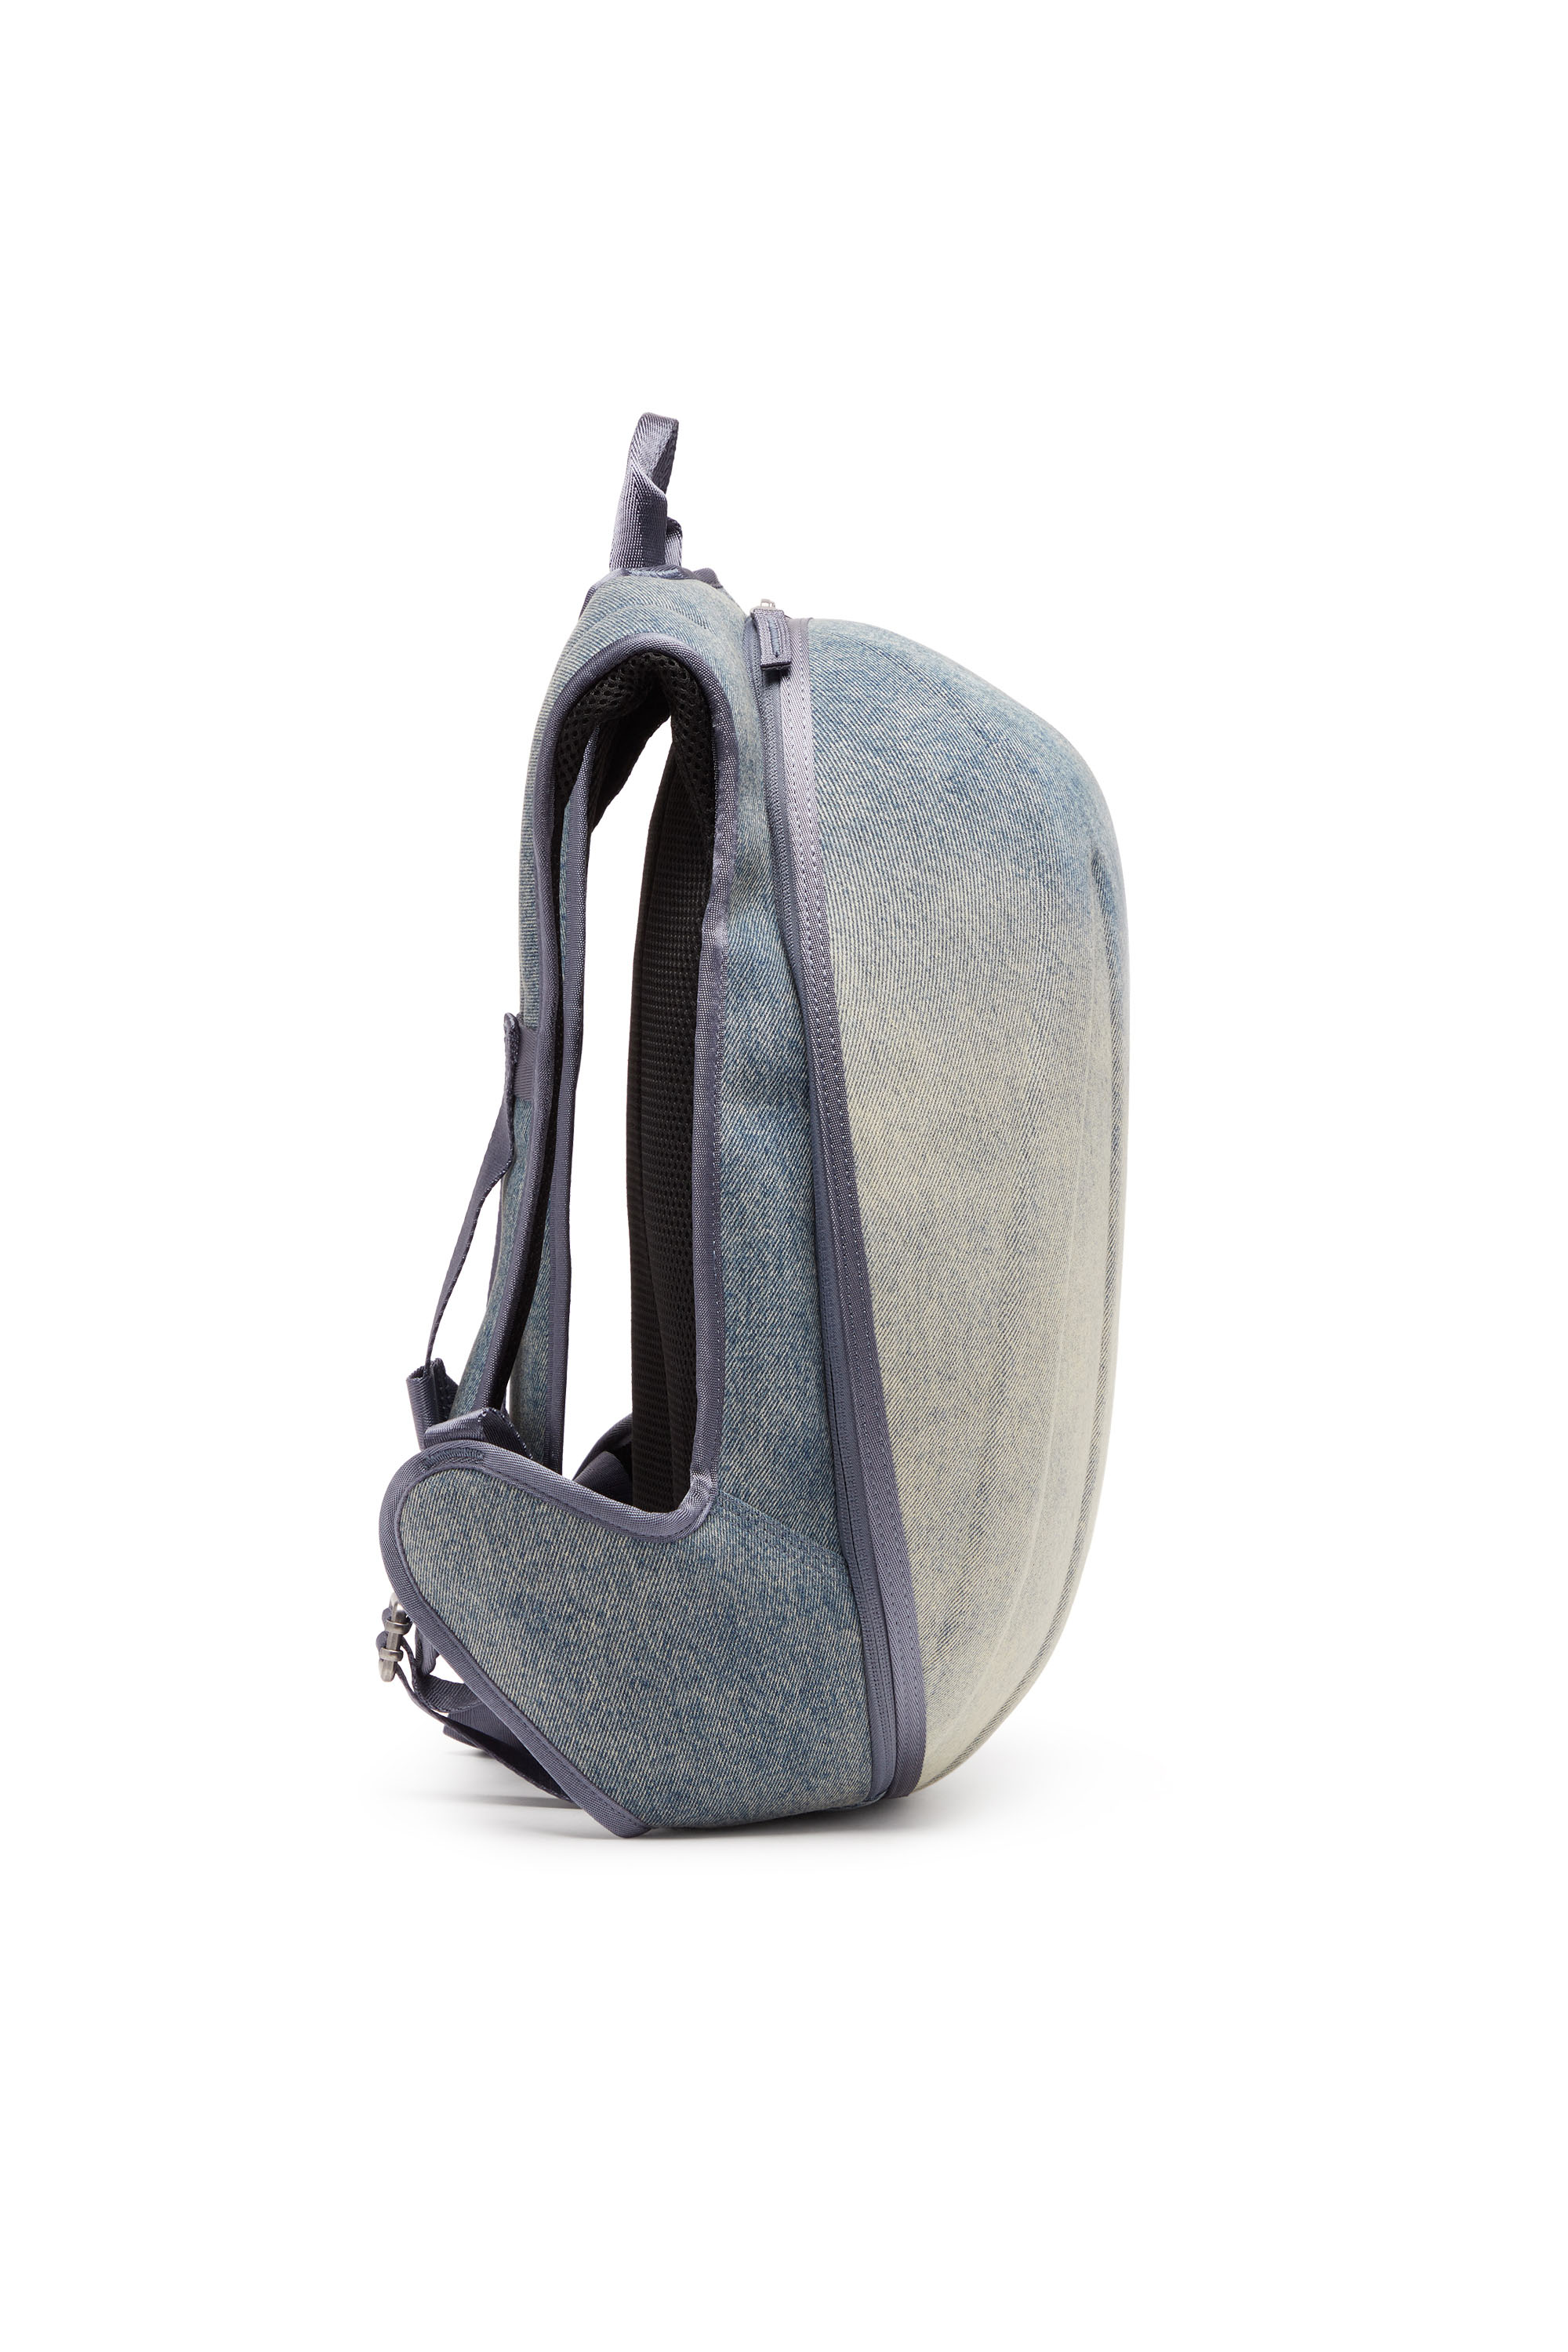 Diesel - 1DR-POD BACKPACK, Man 1DR-Pod Backpack - Hard shell denim backpack in Multicolor - Image 3